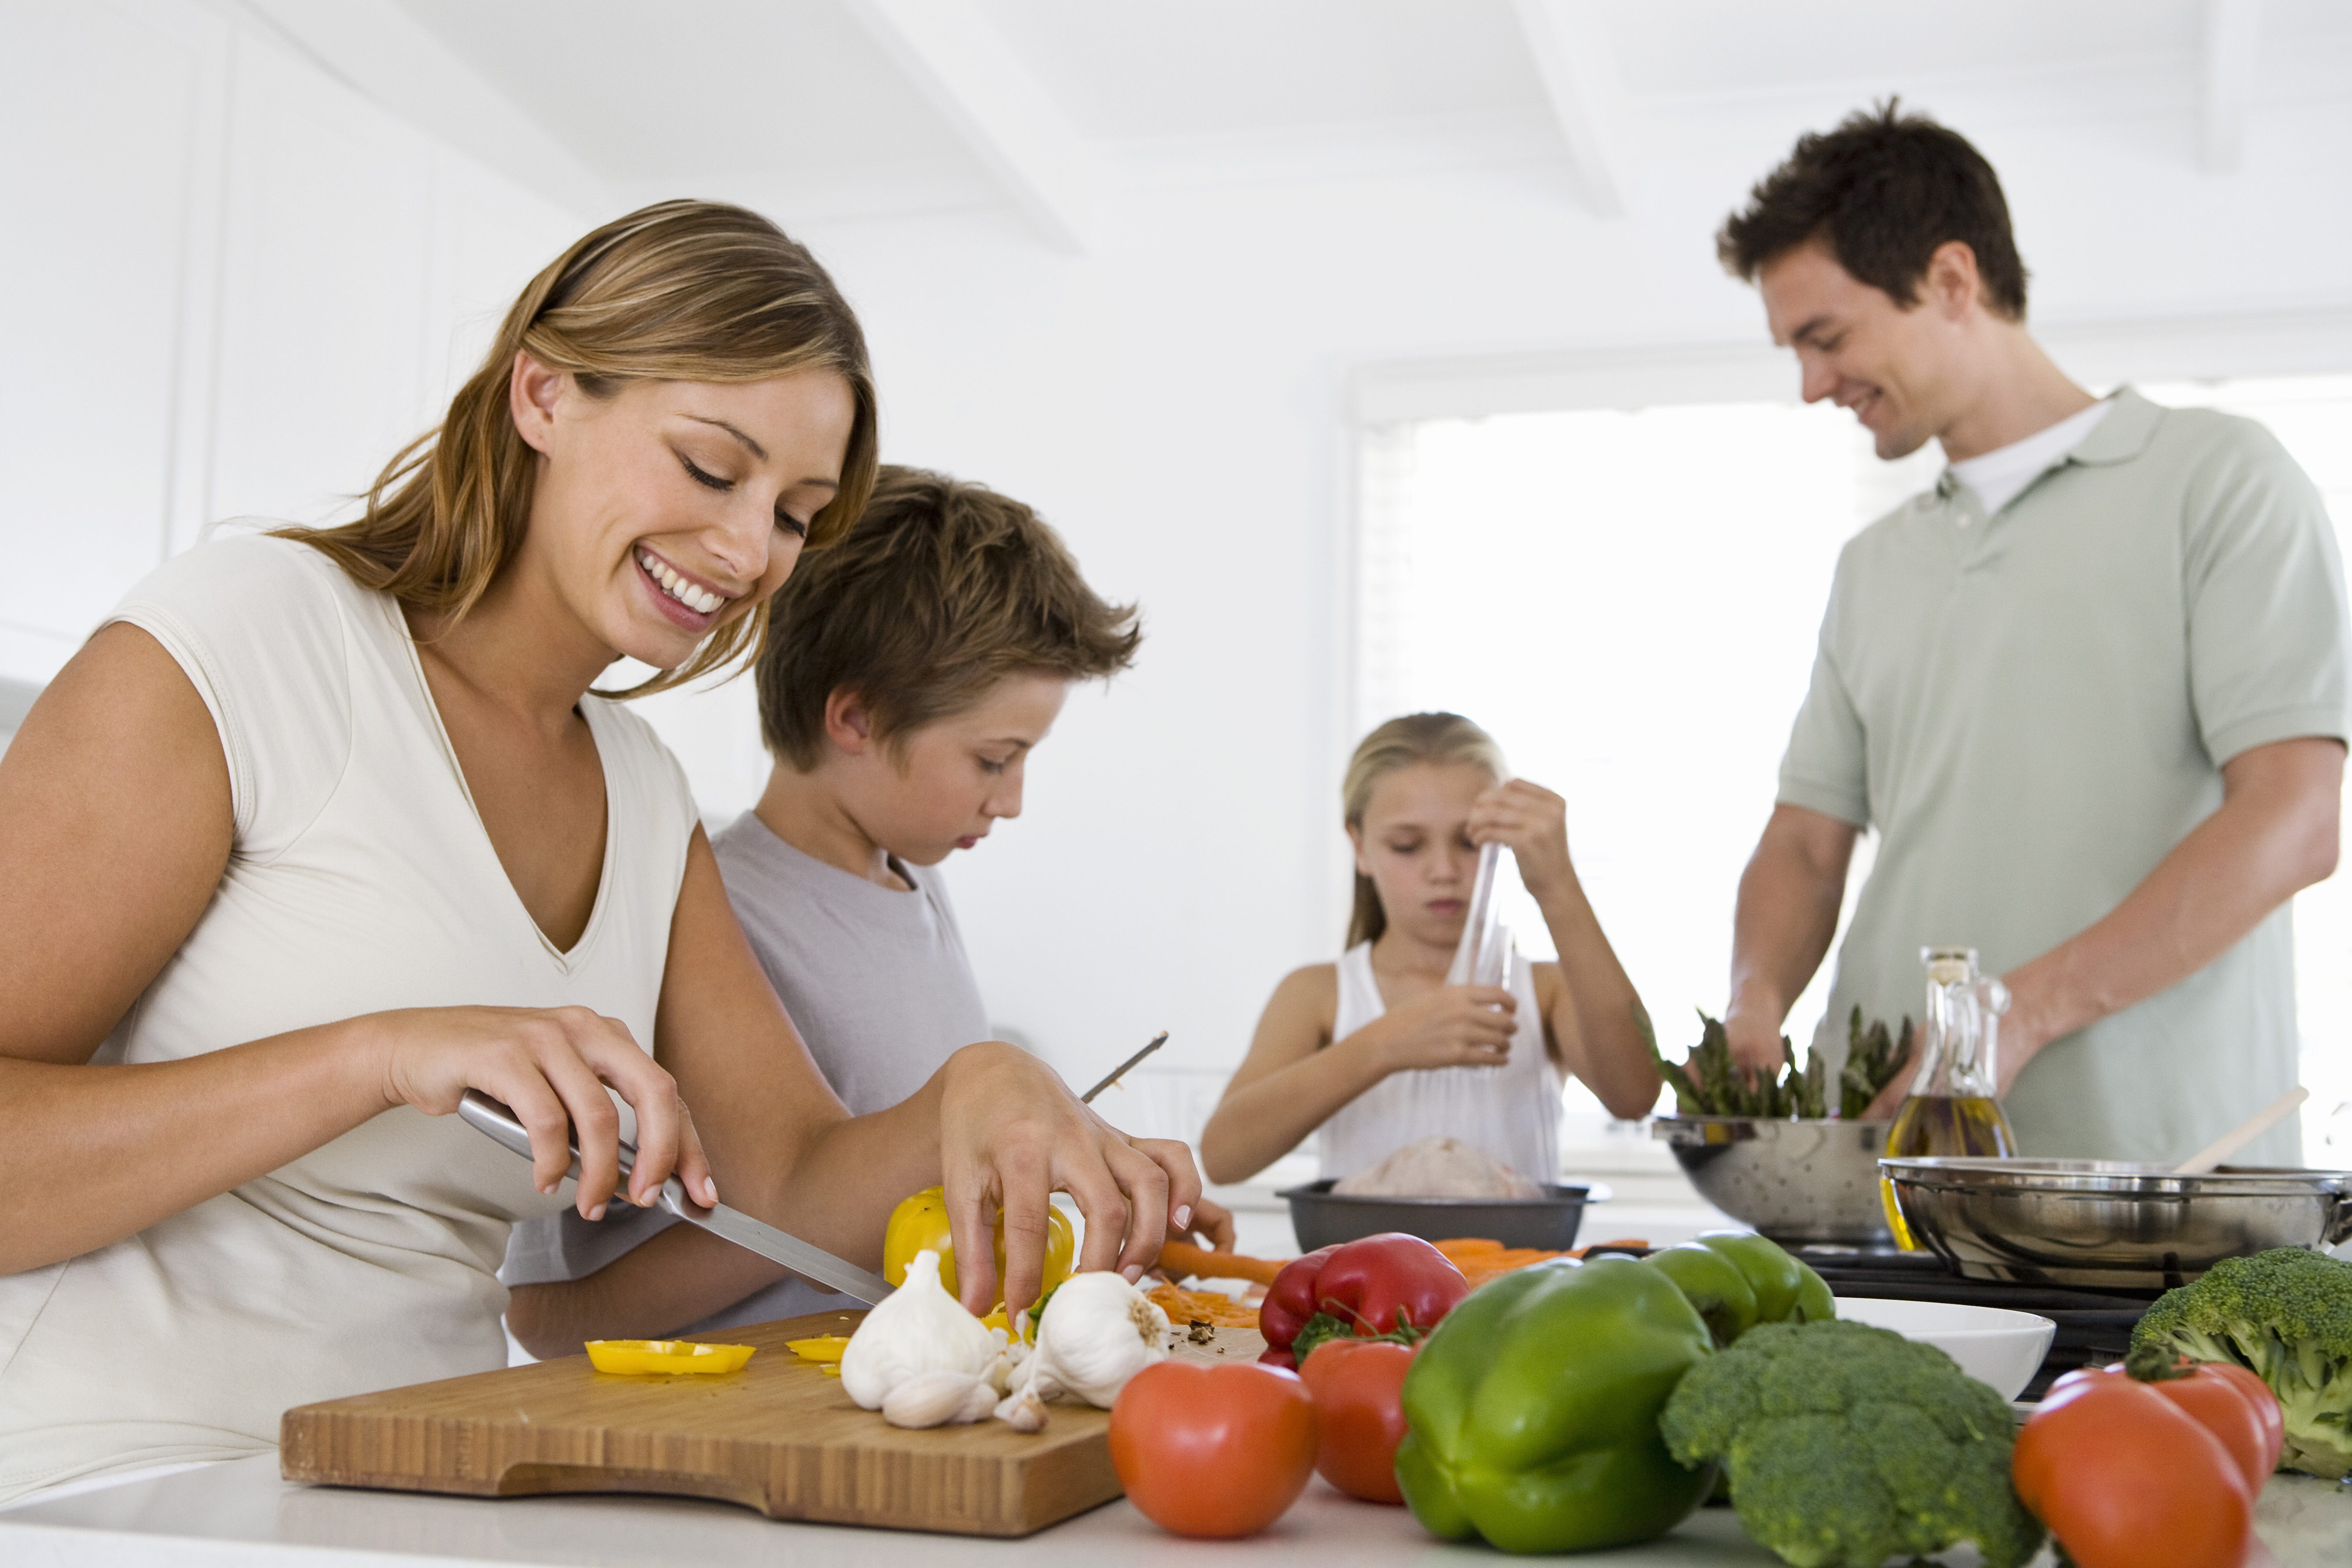 Семья и семейный быт. Здоровый образ жизни в скиье. Здоровое питание в семье. Домашнее хозяйство. Правильное питание семья.